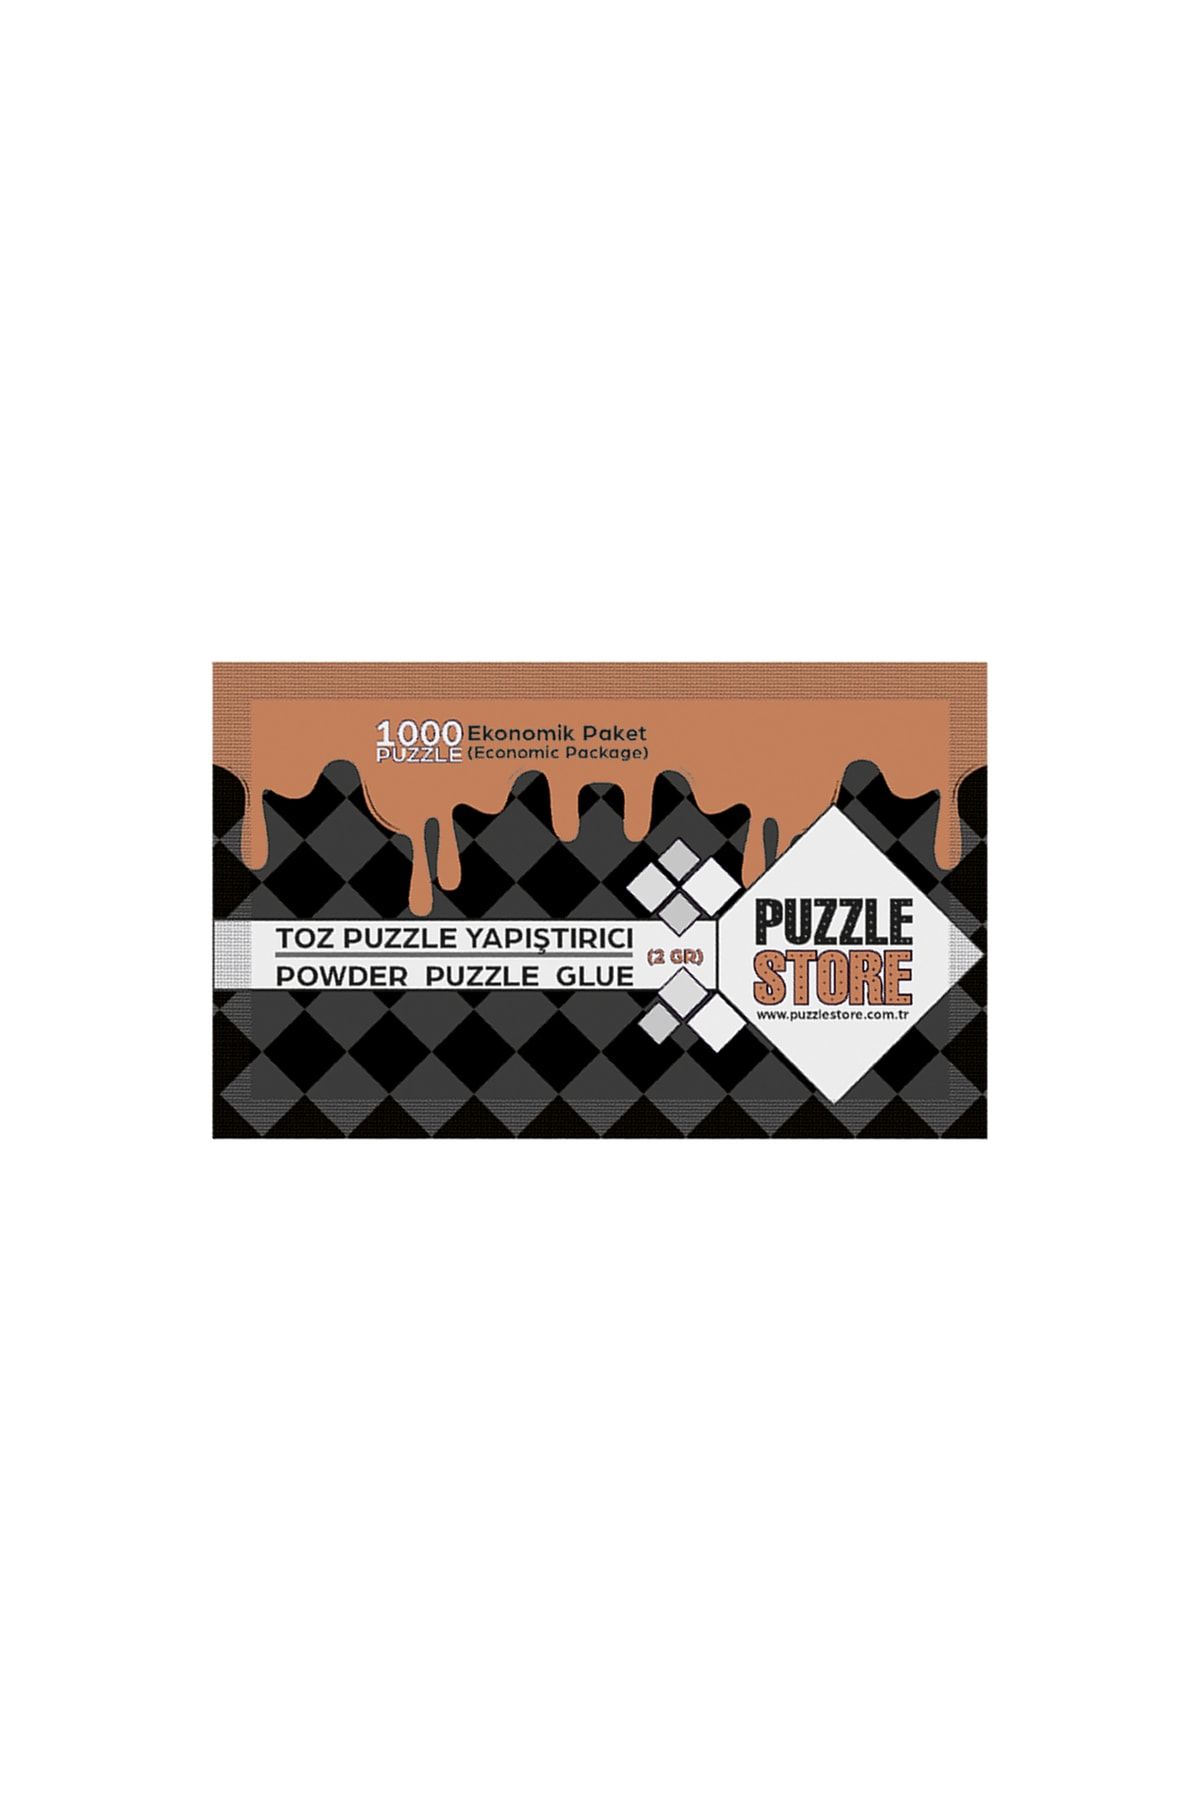 Puzzle Store Toz Puzzle Yapıştırıcı 1000 Parça (powder Glue 1000 Pieces)